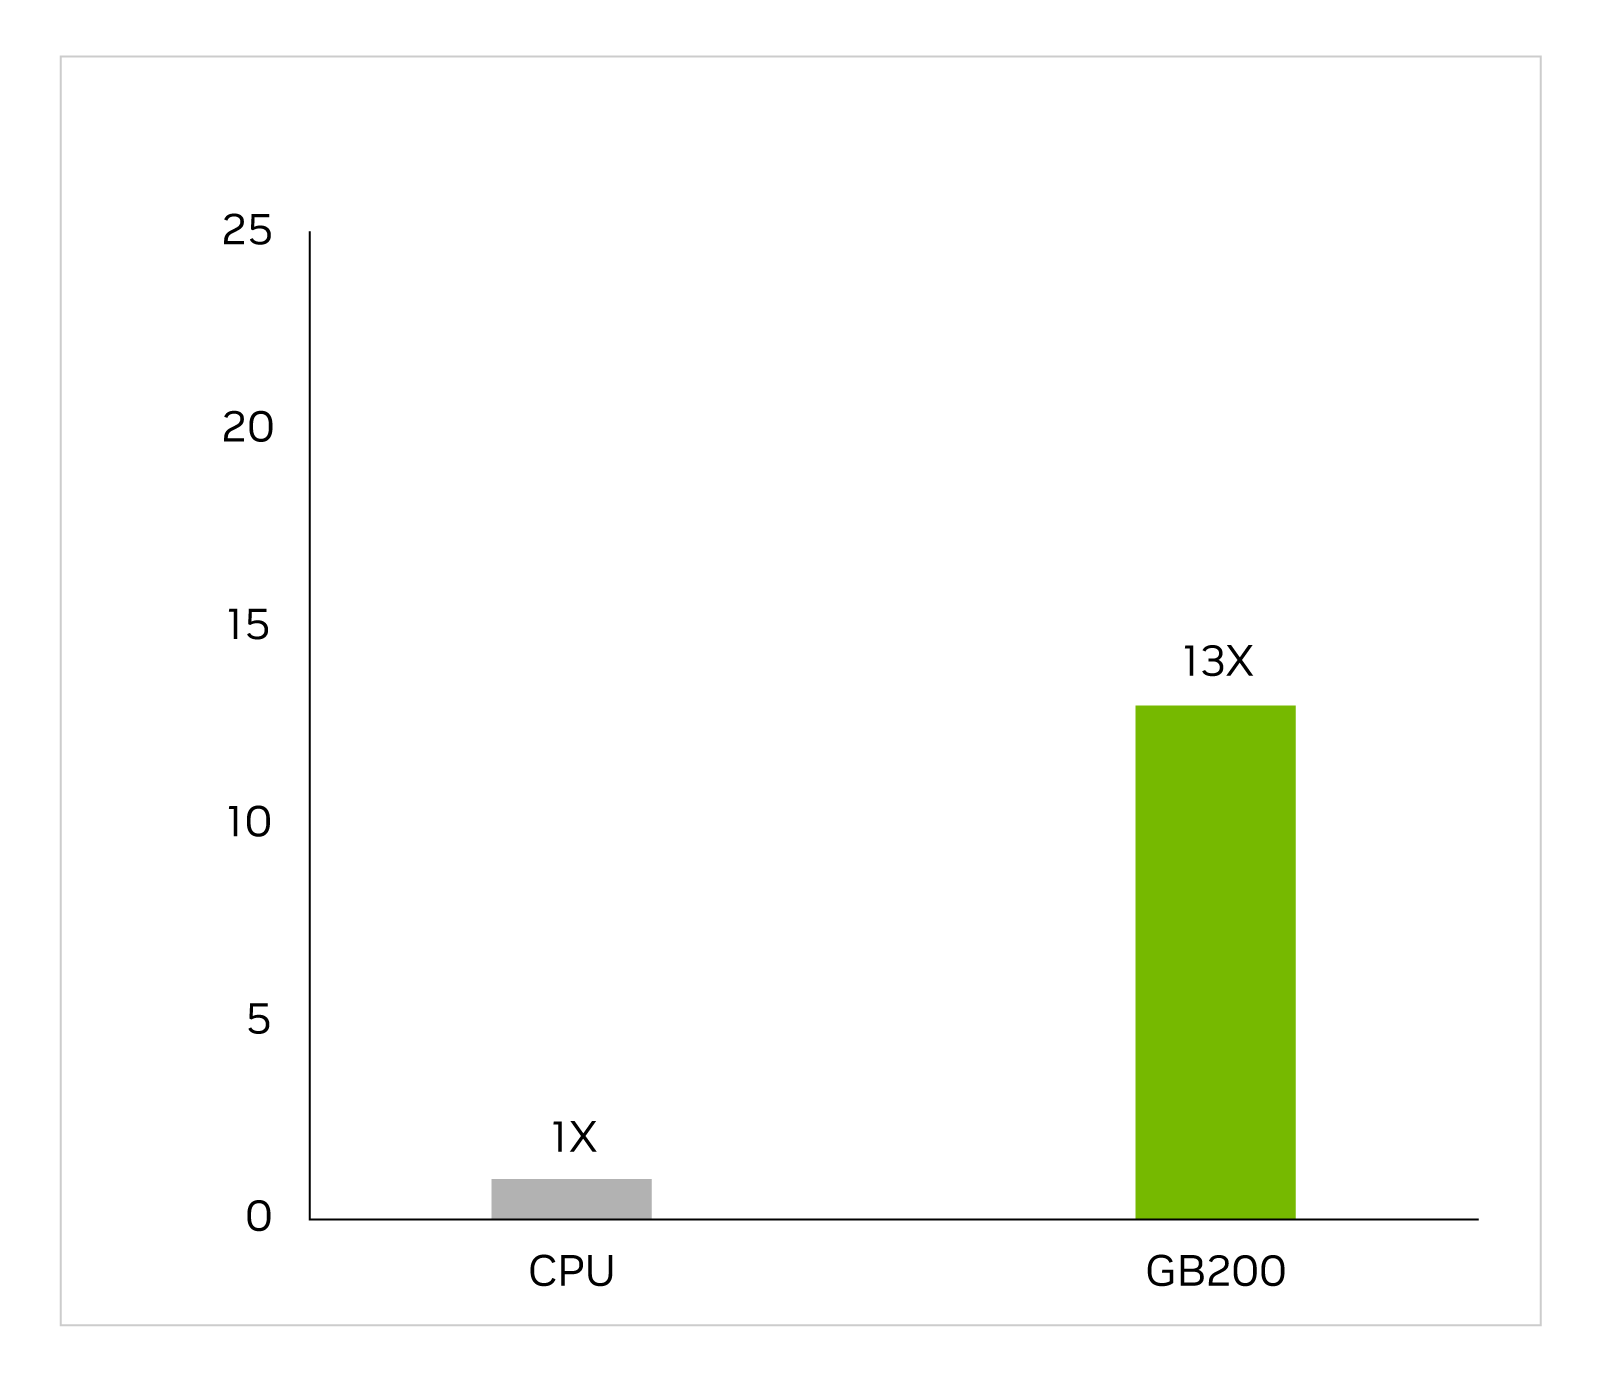 条形图，显示值为1x的CPU和值为13x的GB200。